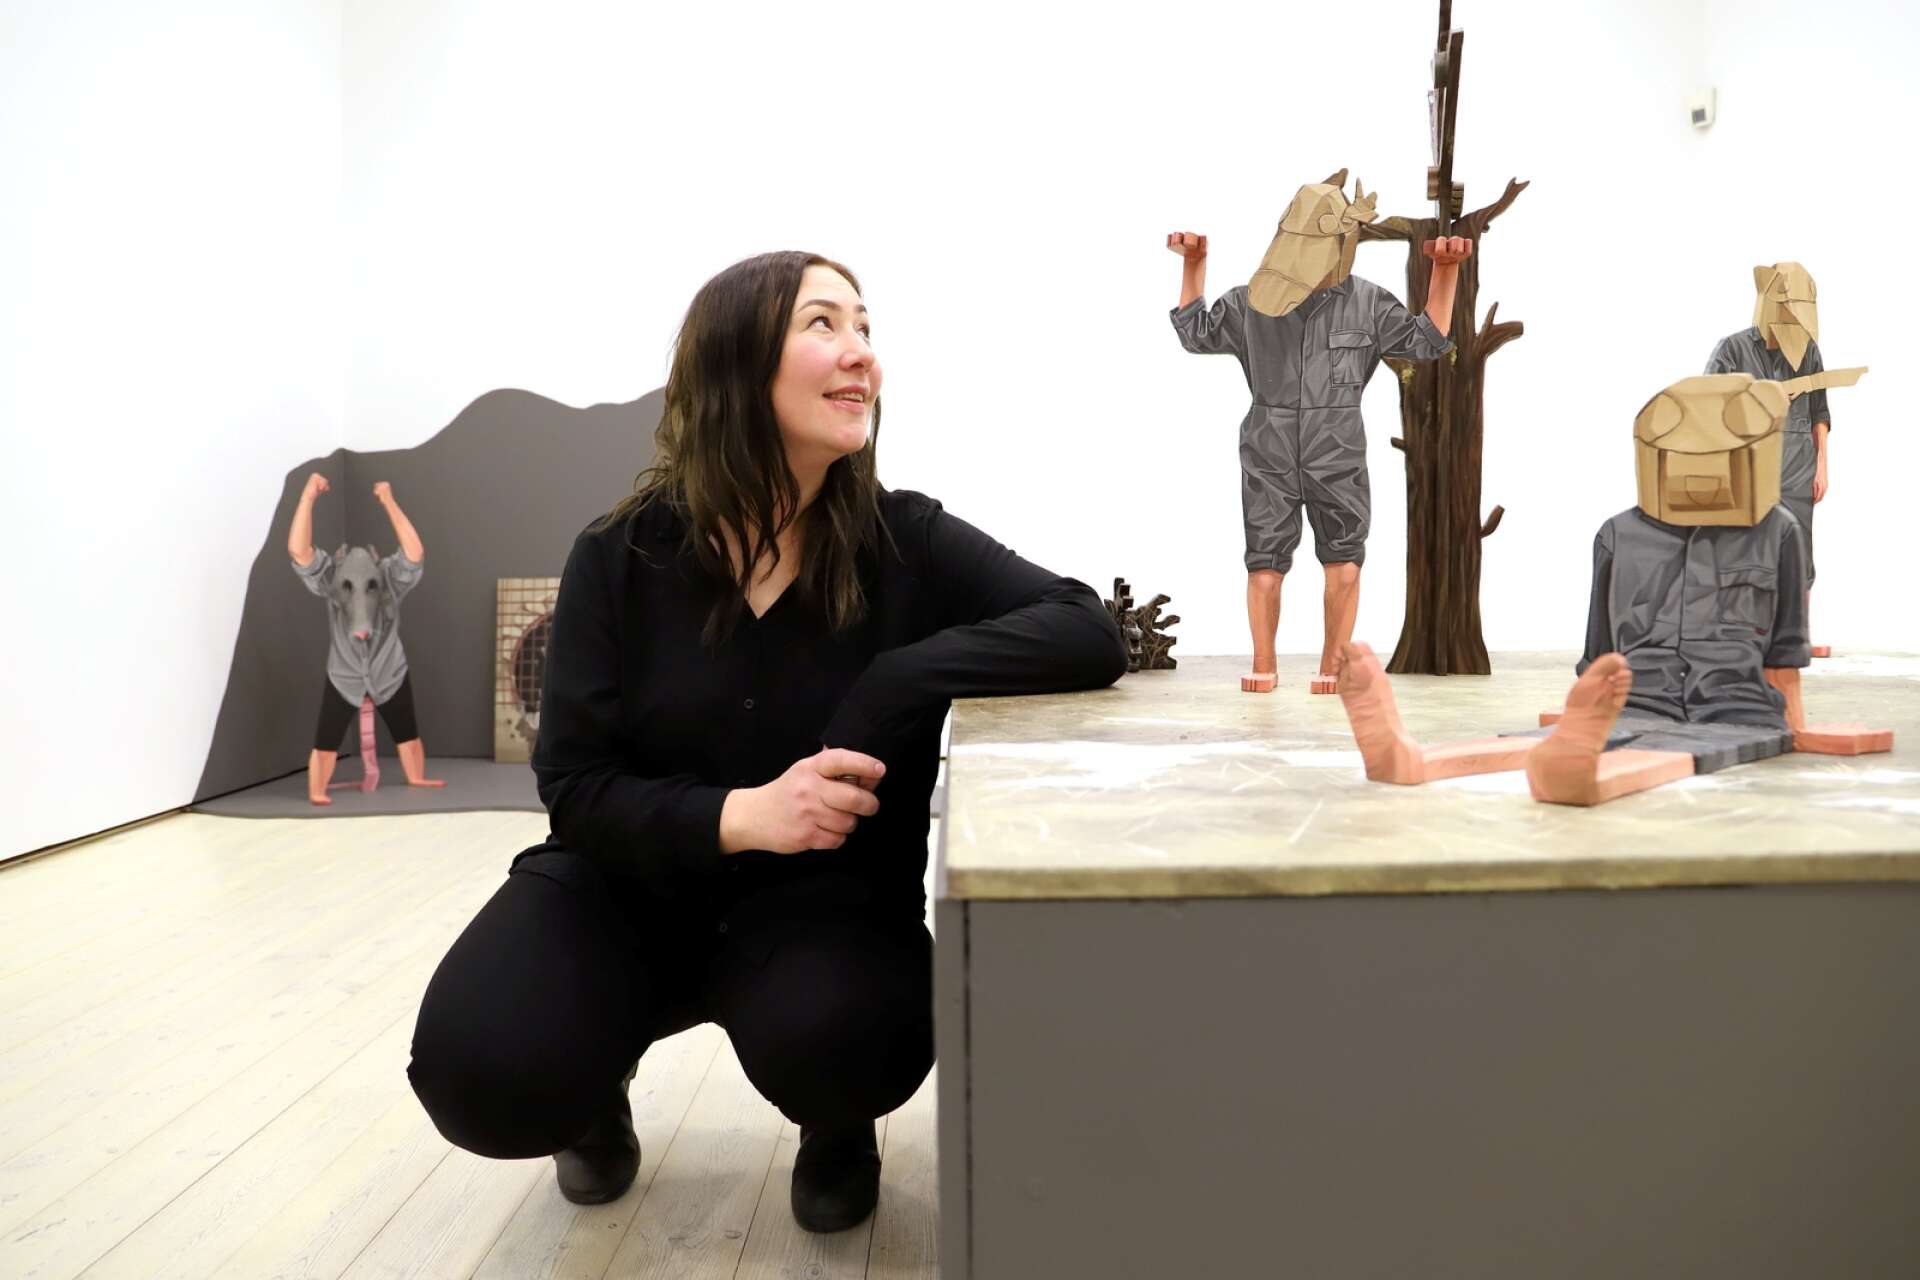 Amanda Karlsson är årets konstnärsstipendiat på Kristinehamns konstmuseum och får ett eget utställningsrum för sina målningar och skulpturer.